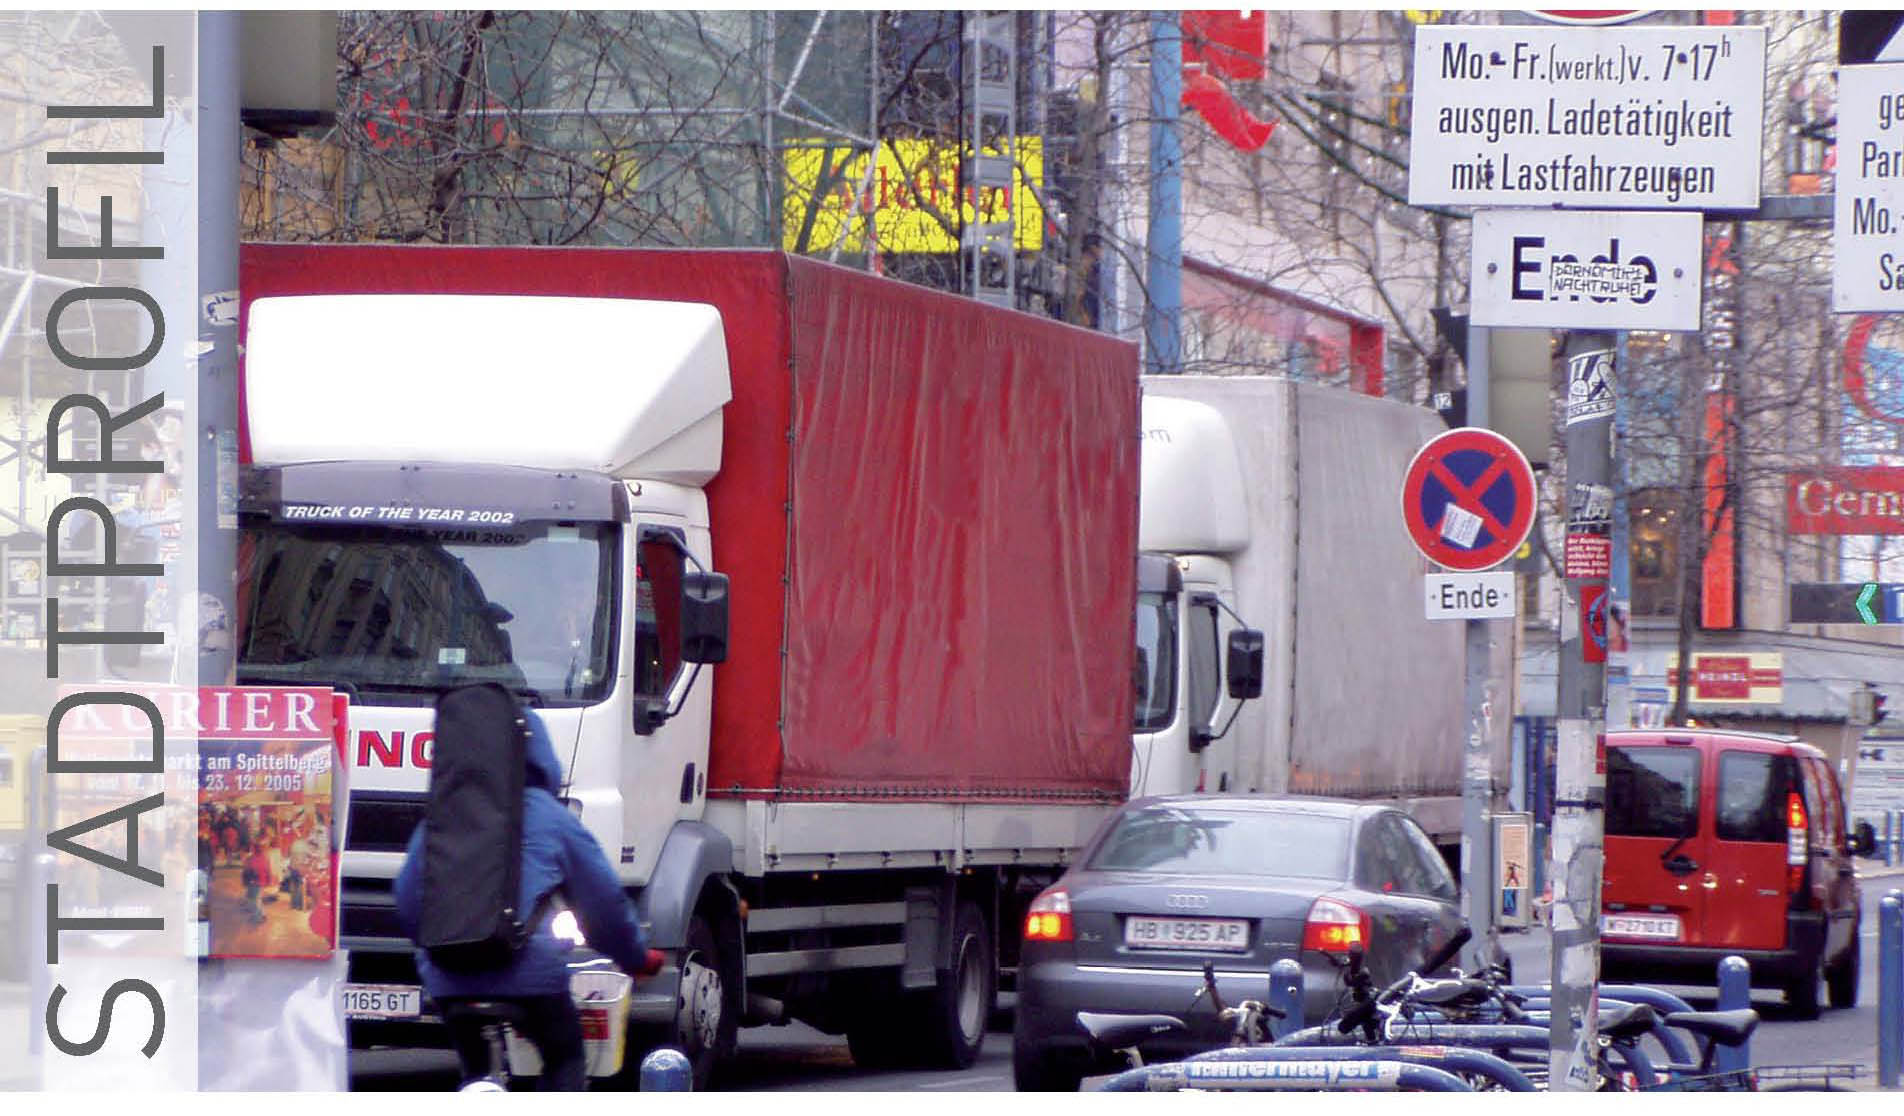 Parkraumbewirtschaftung Wien: Auswirkungen Verteilung Parkkarte